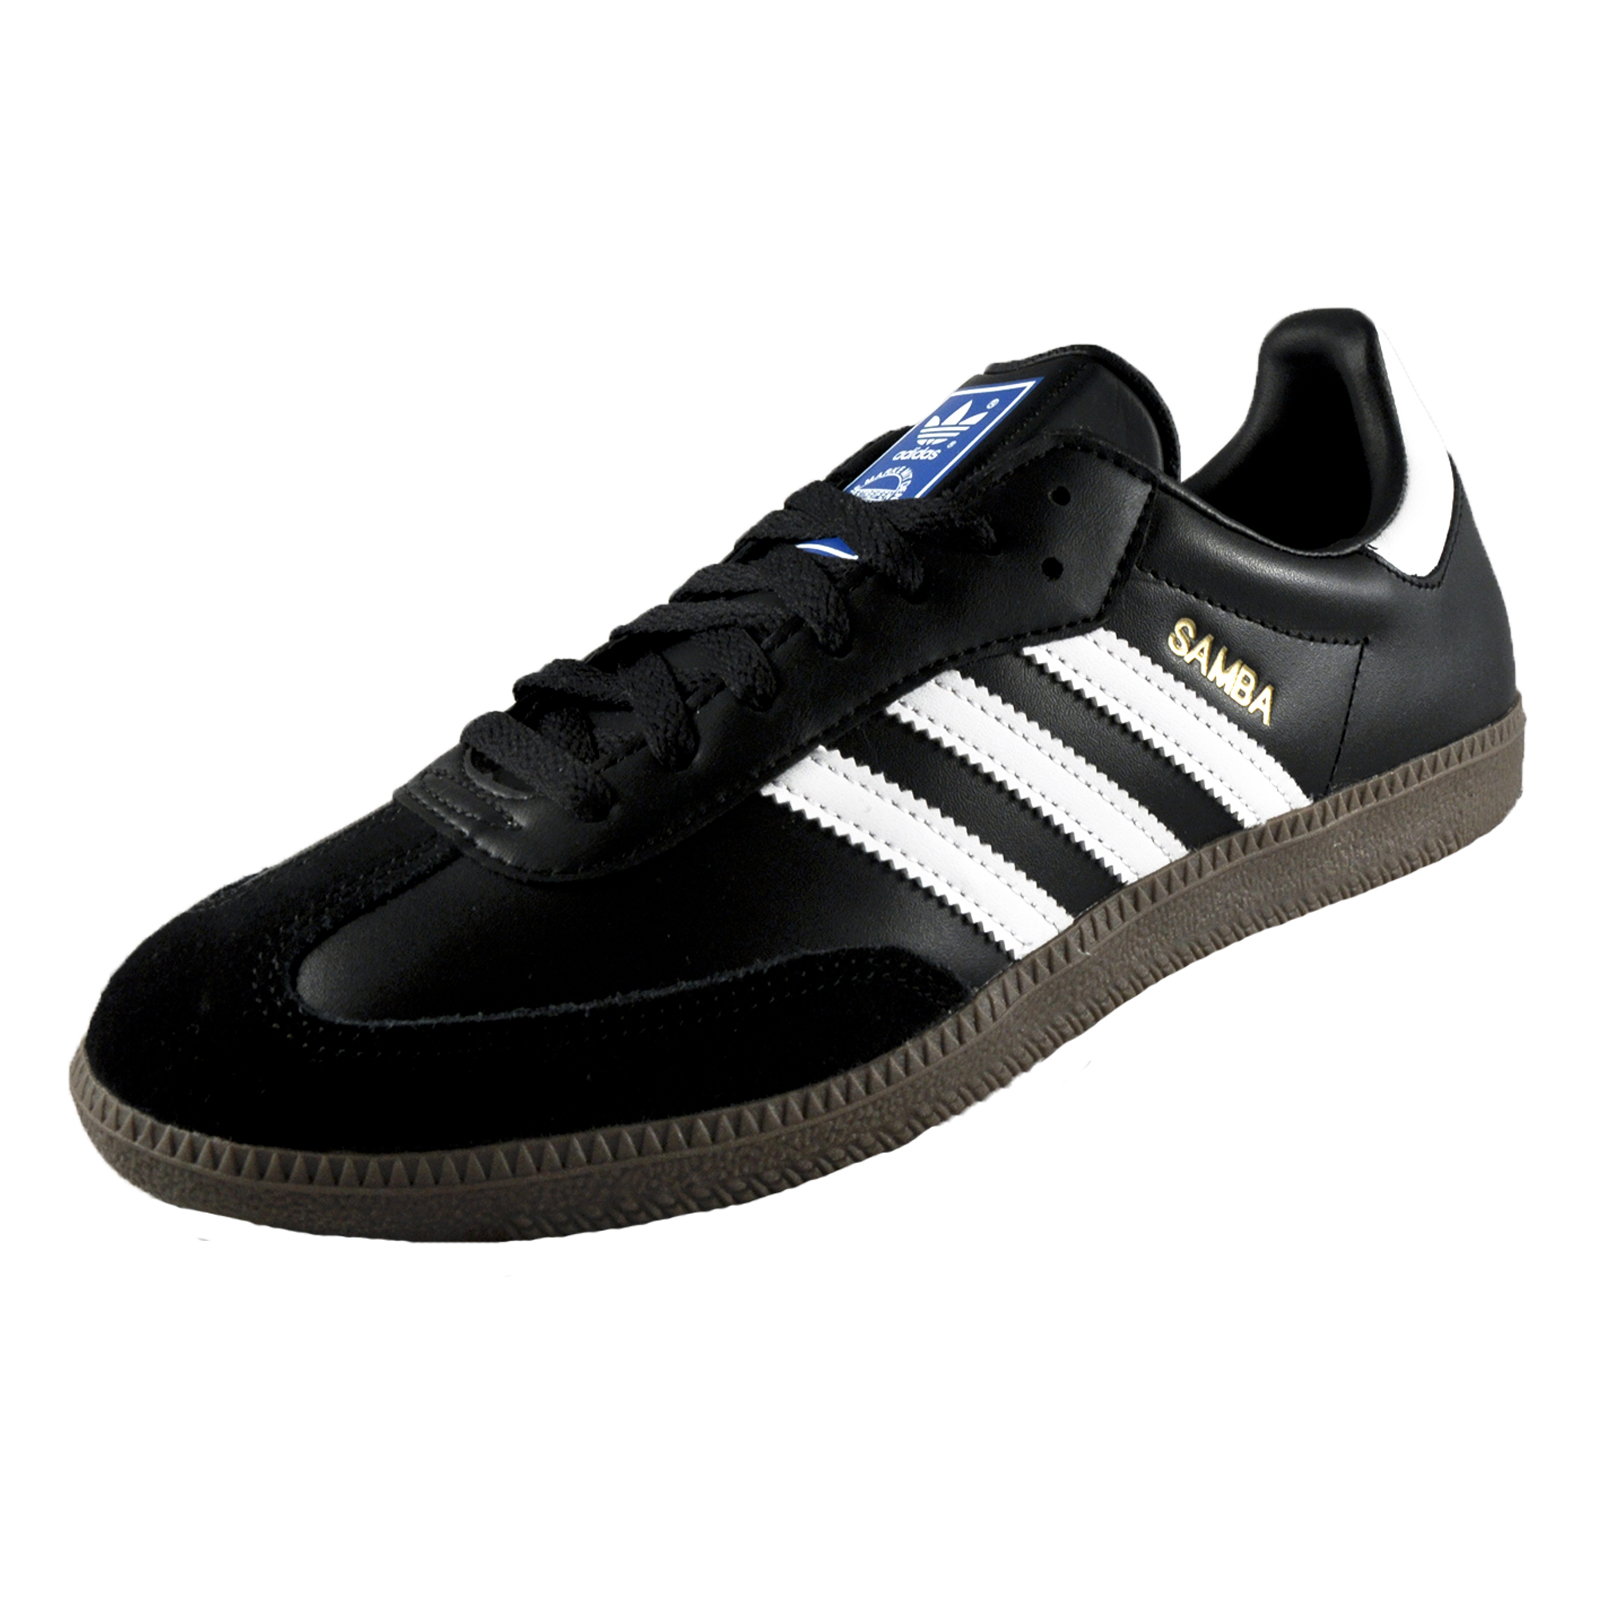 Adidas Originals Mens Samba Classic Leather Retro Trainers Black ...